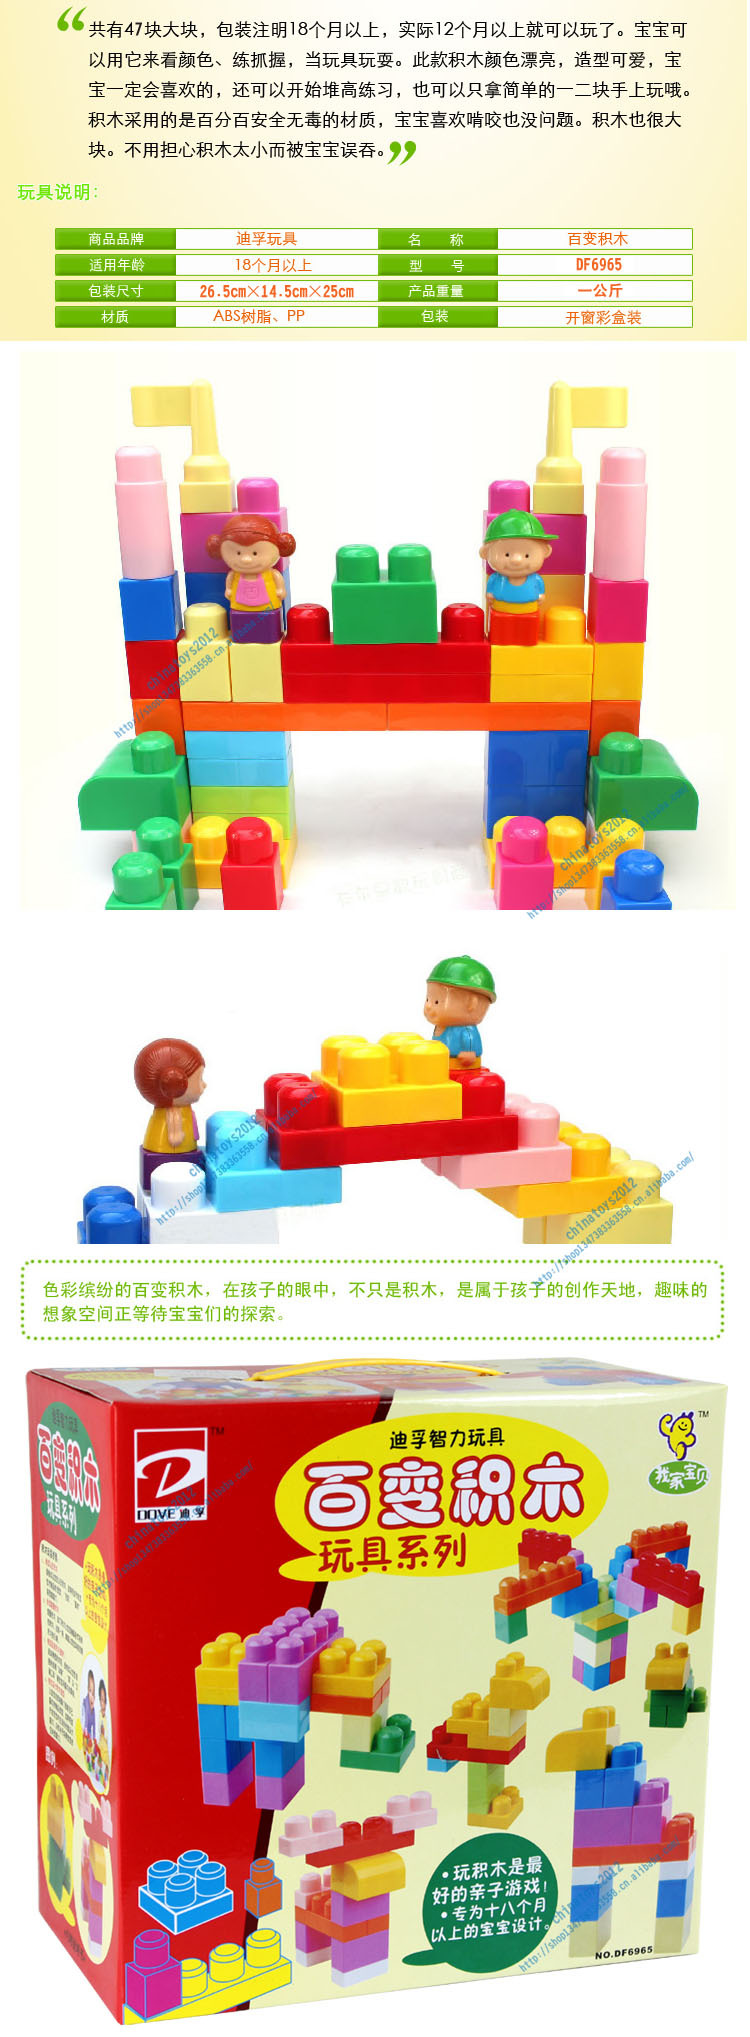 正品迪孚df6965拼装拼插塑料智力百变积木儿童益智diy玩具1-3-6岁